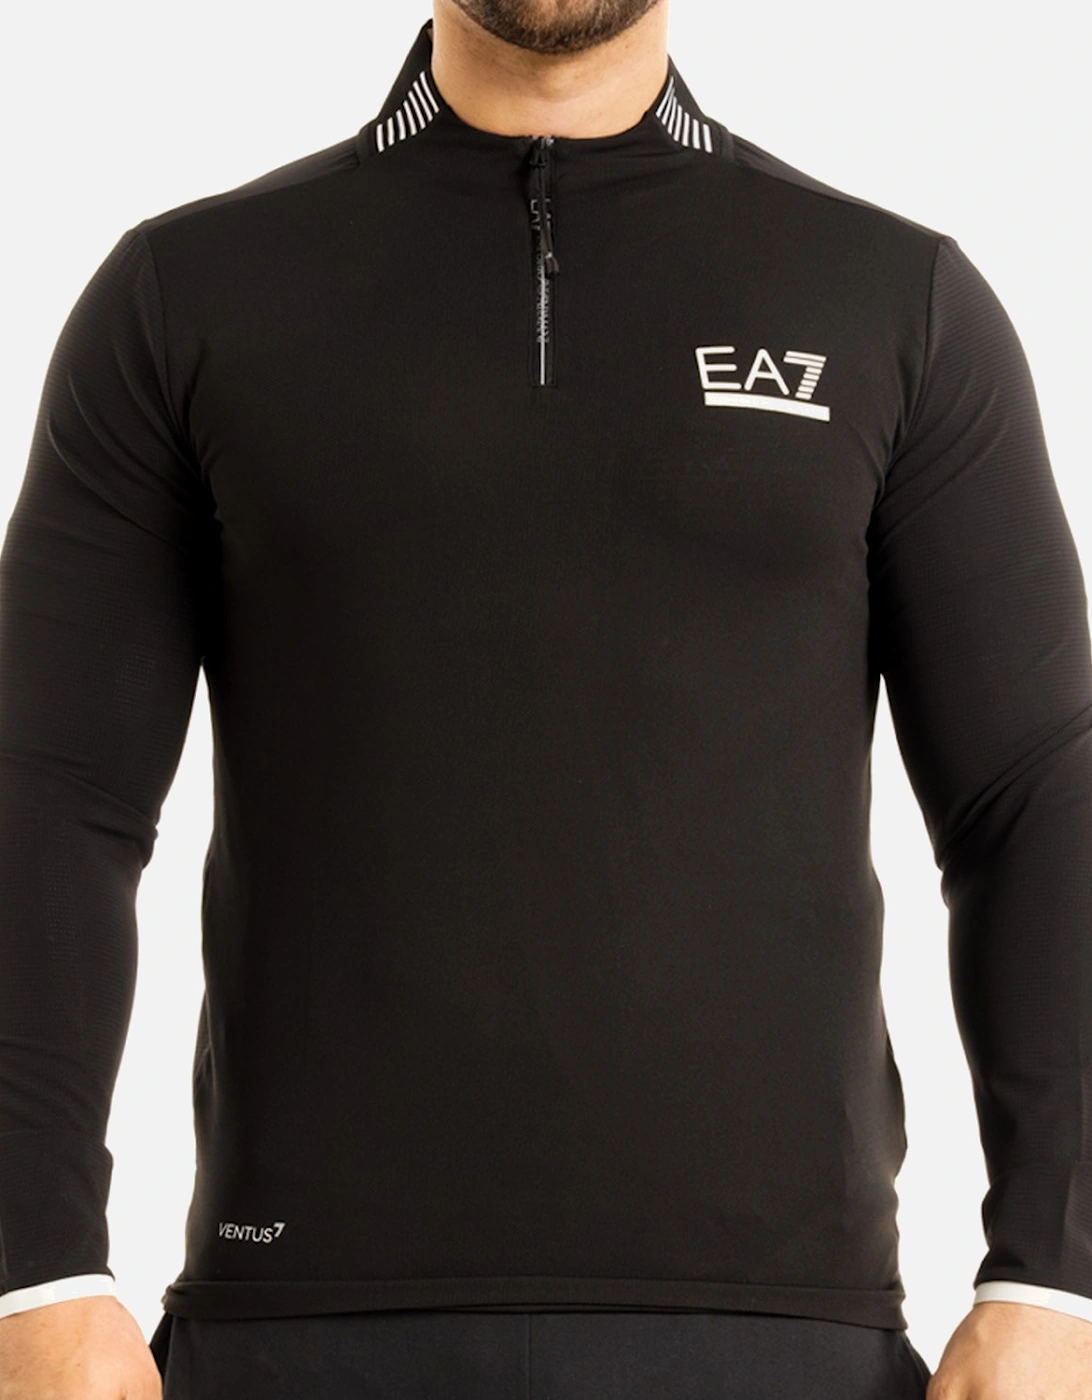 EA7 Mens Ventus7 1/4 Zip Tech Sweatshirt (Black), 8 of 7